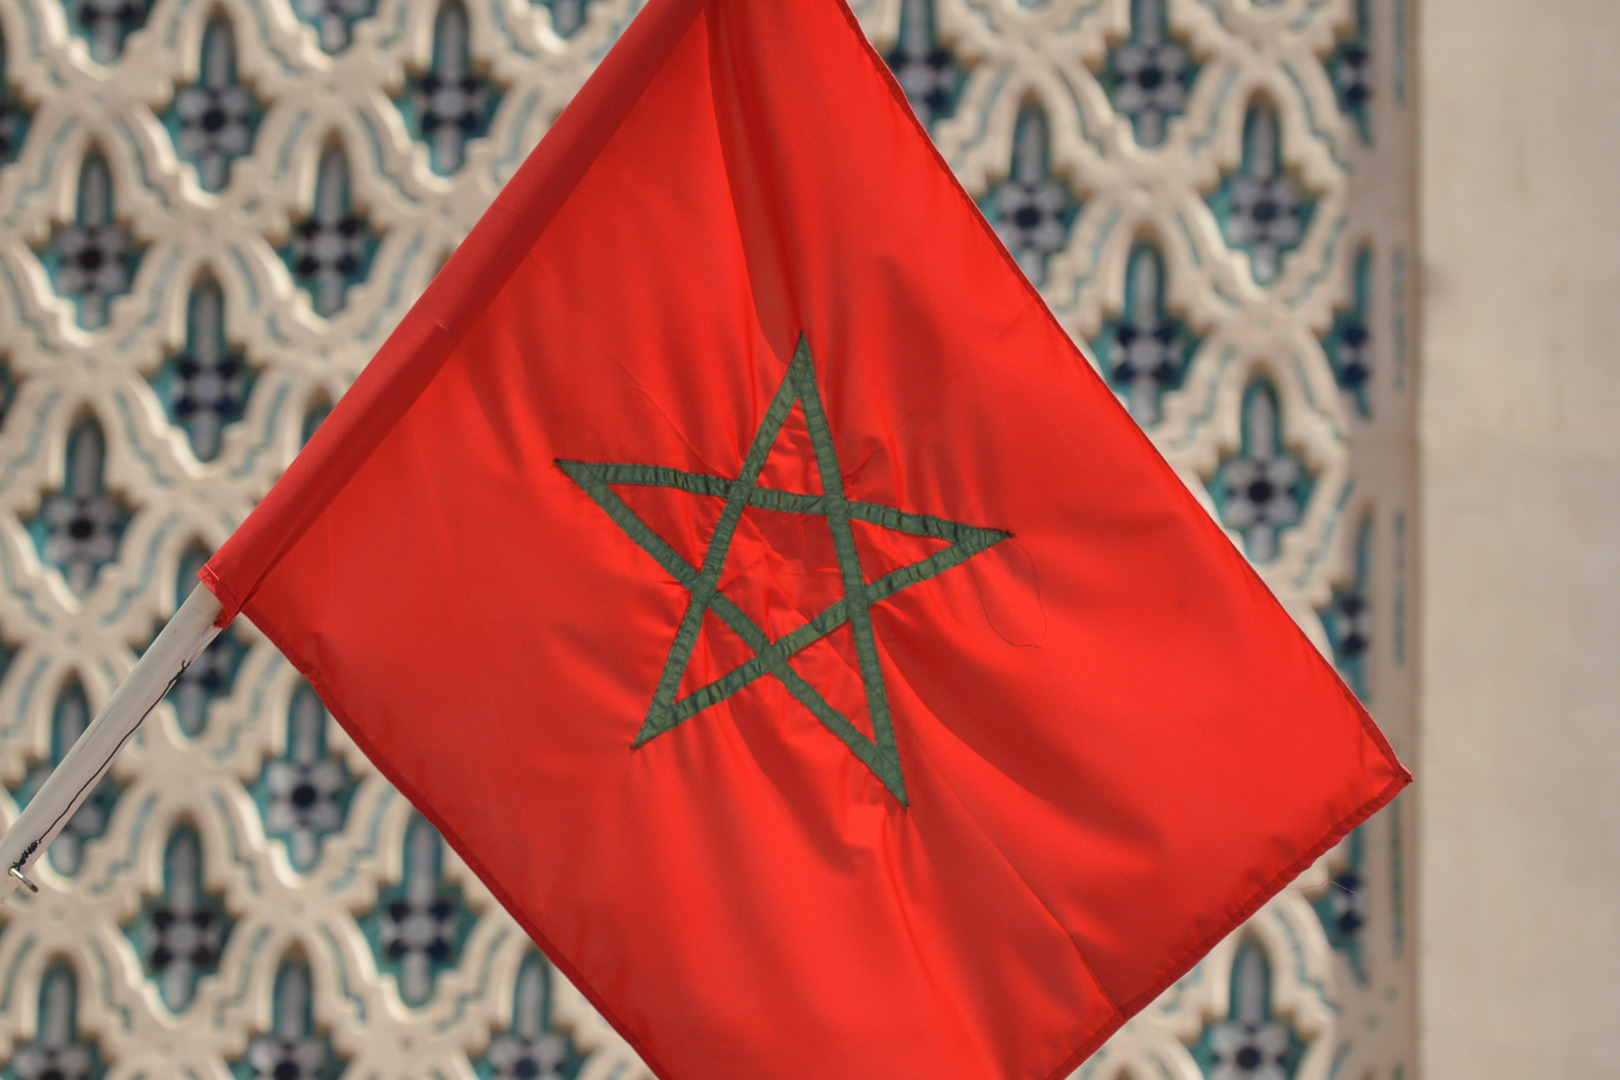 عريضة تطالب بإقالة سفير الغابون لدى المغرب بعد مواجهات عنيفة في الرباط (فيديو)